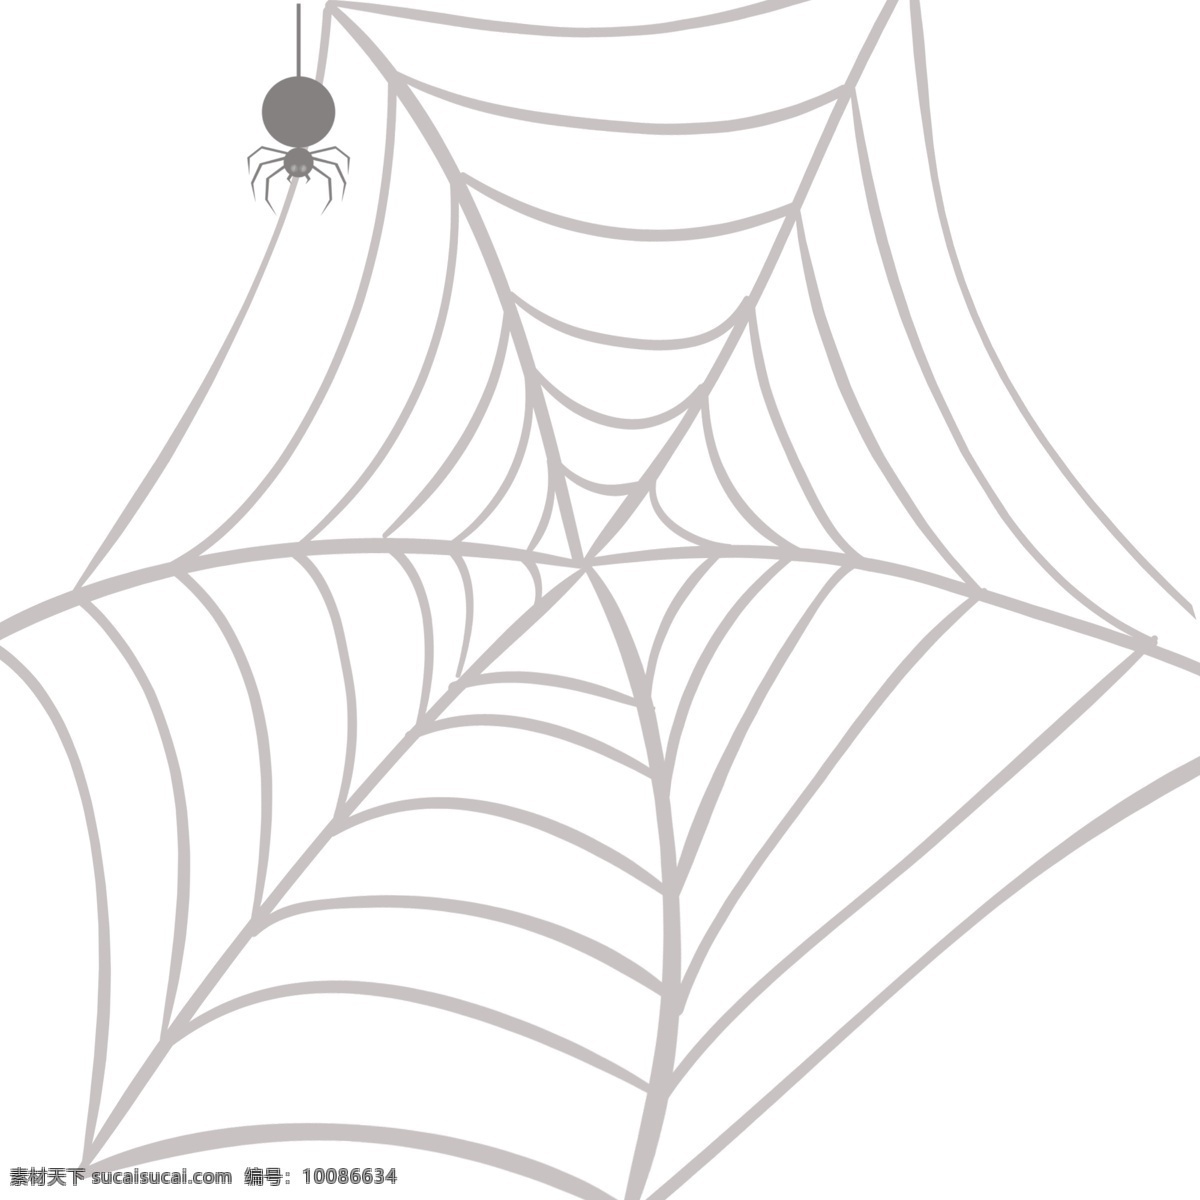 蜘蛛网 创意 蜘蛛 元素 复活节 蛛网 卡通手绘 西方鬼节 危险 黑色 手绘蜘蛛网